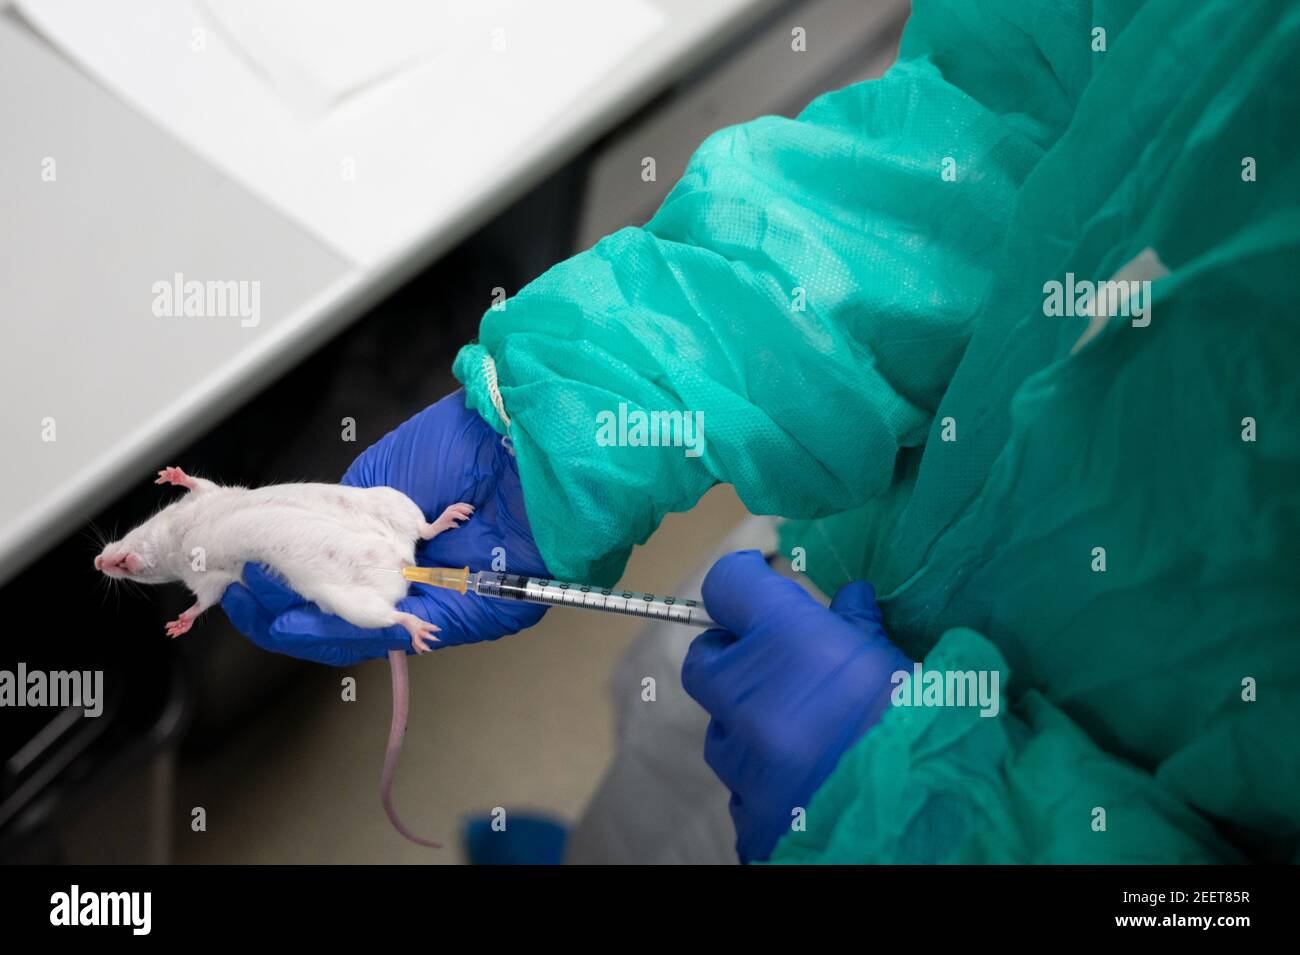 Madrid, España. 16 de febrero de 2021. Un investigador que muestra cómo  realizar una inyección intraperitoneal a un ratón en la instalación Animal  del Centro de Investigación Biológica Margarita Salas (CIB-CSIC). La